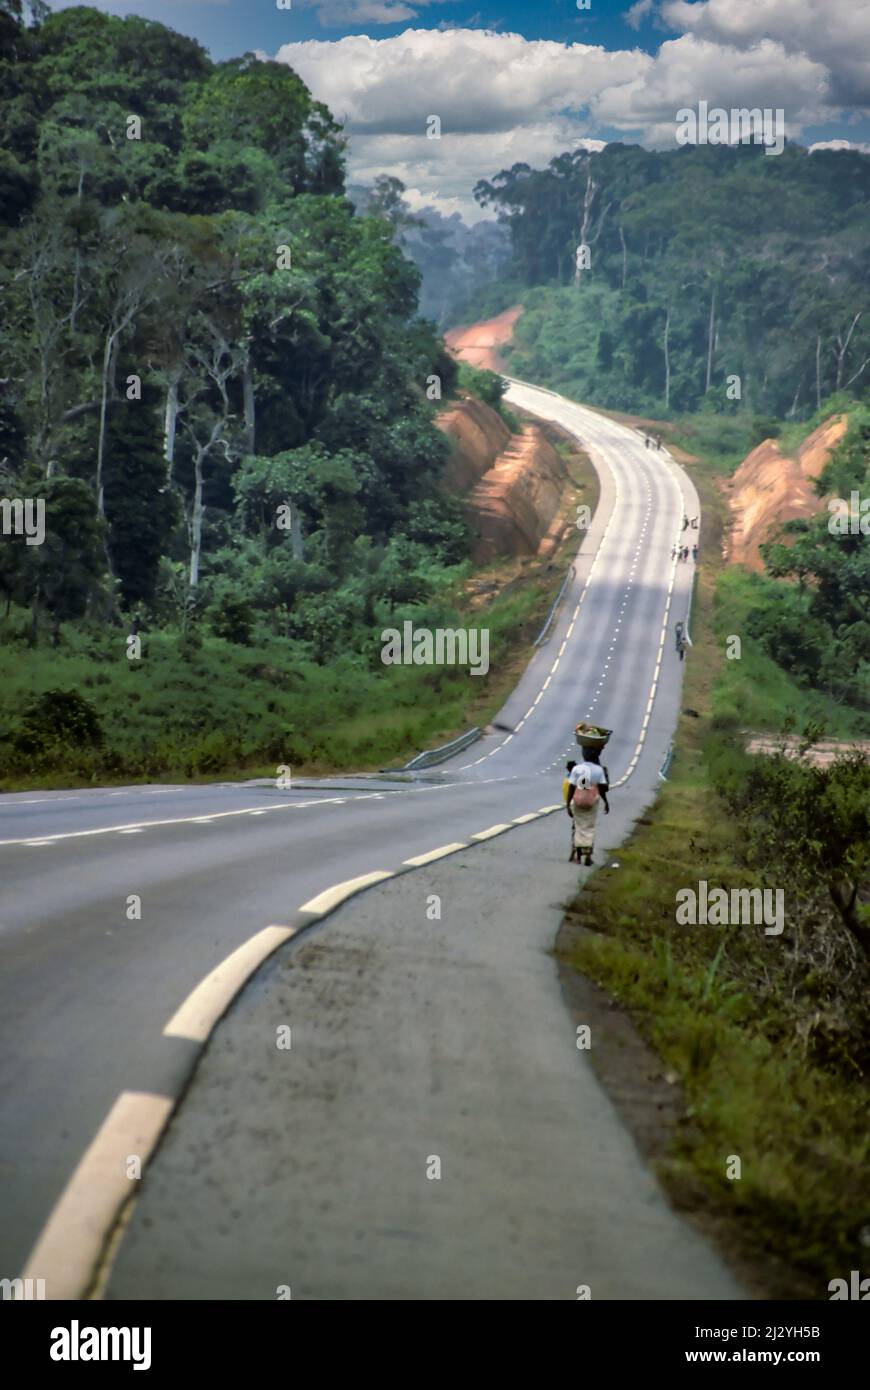 Costa d'Avorio, Costa d'Avorio, Africa occidentale - autostrada costiera, Abidjan a San Pedro. La costruzione di autostrade contribuisce alla deforestazione, sia per spianare la strada che per incoraggiare un nuovo insediamento lungo il percorso. Foto Stock